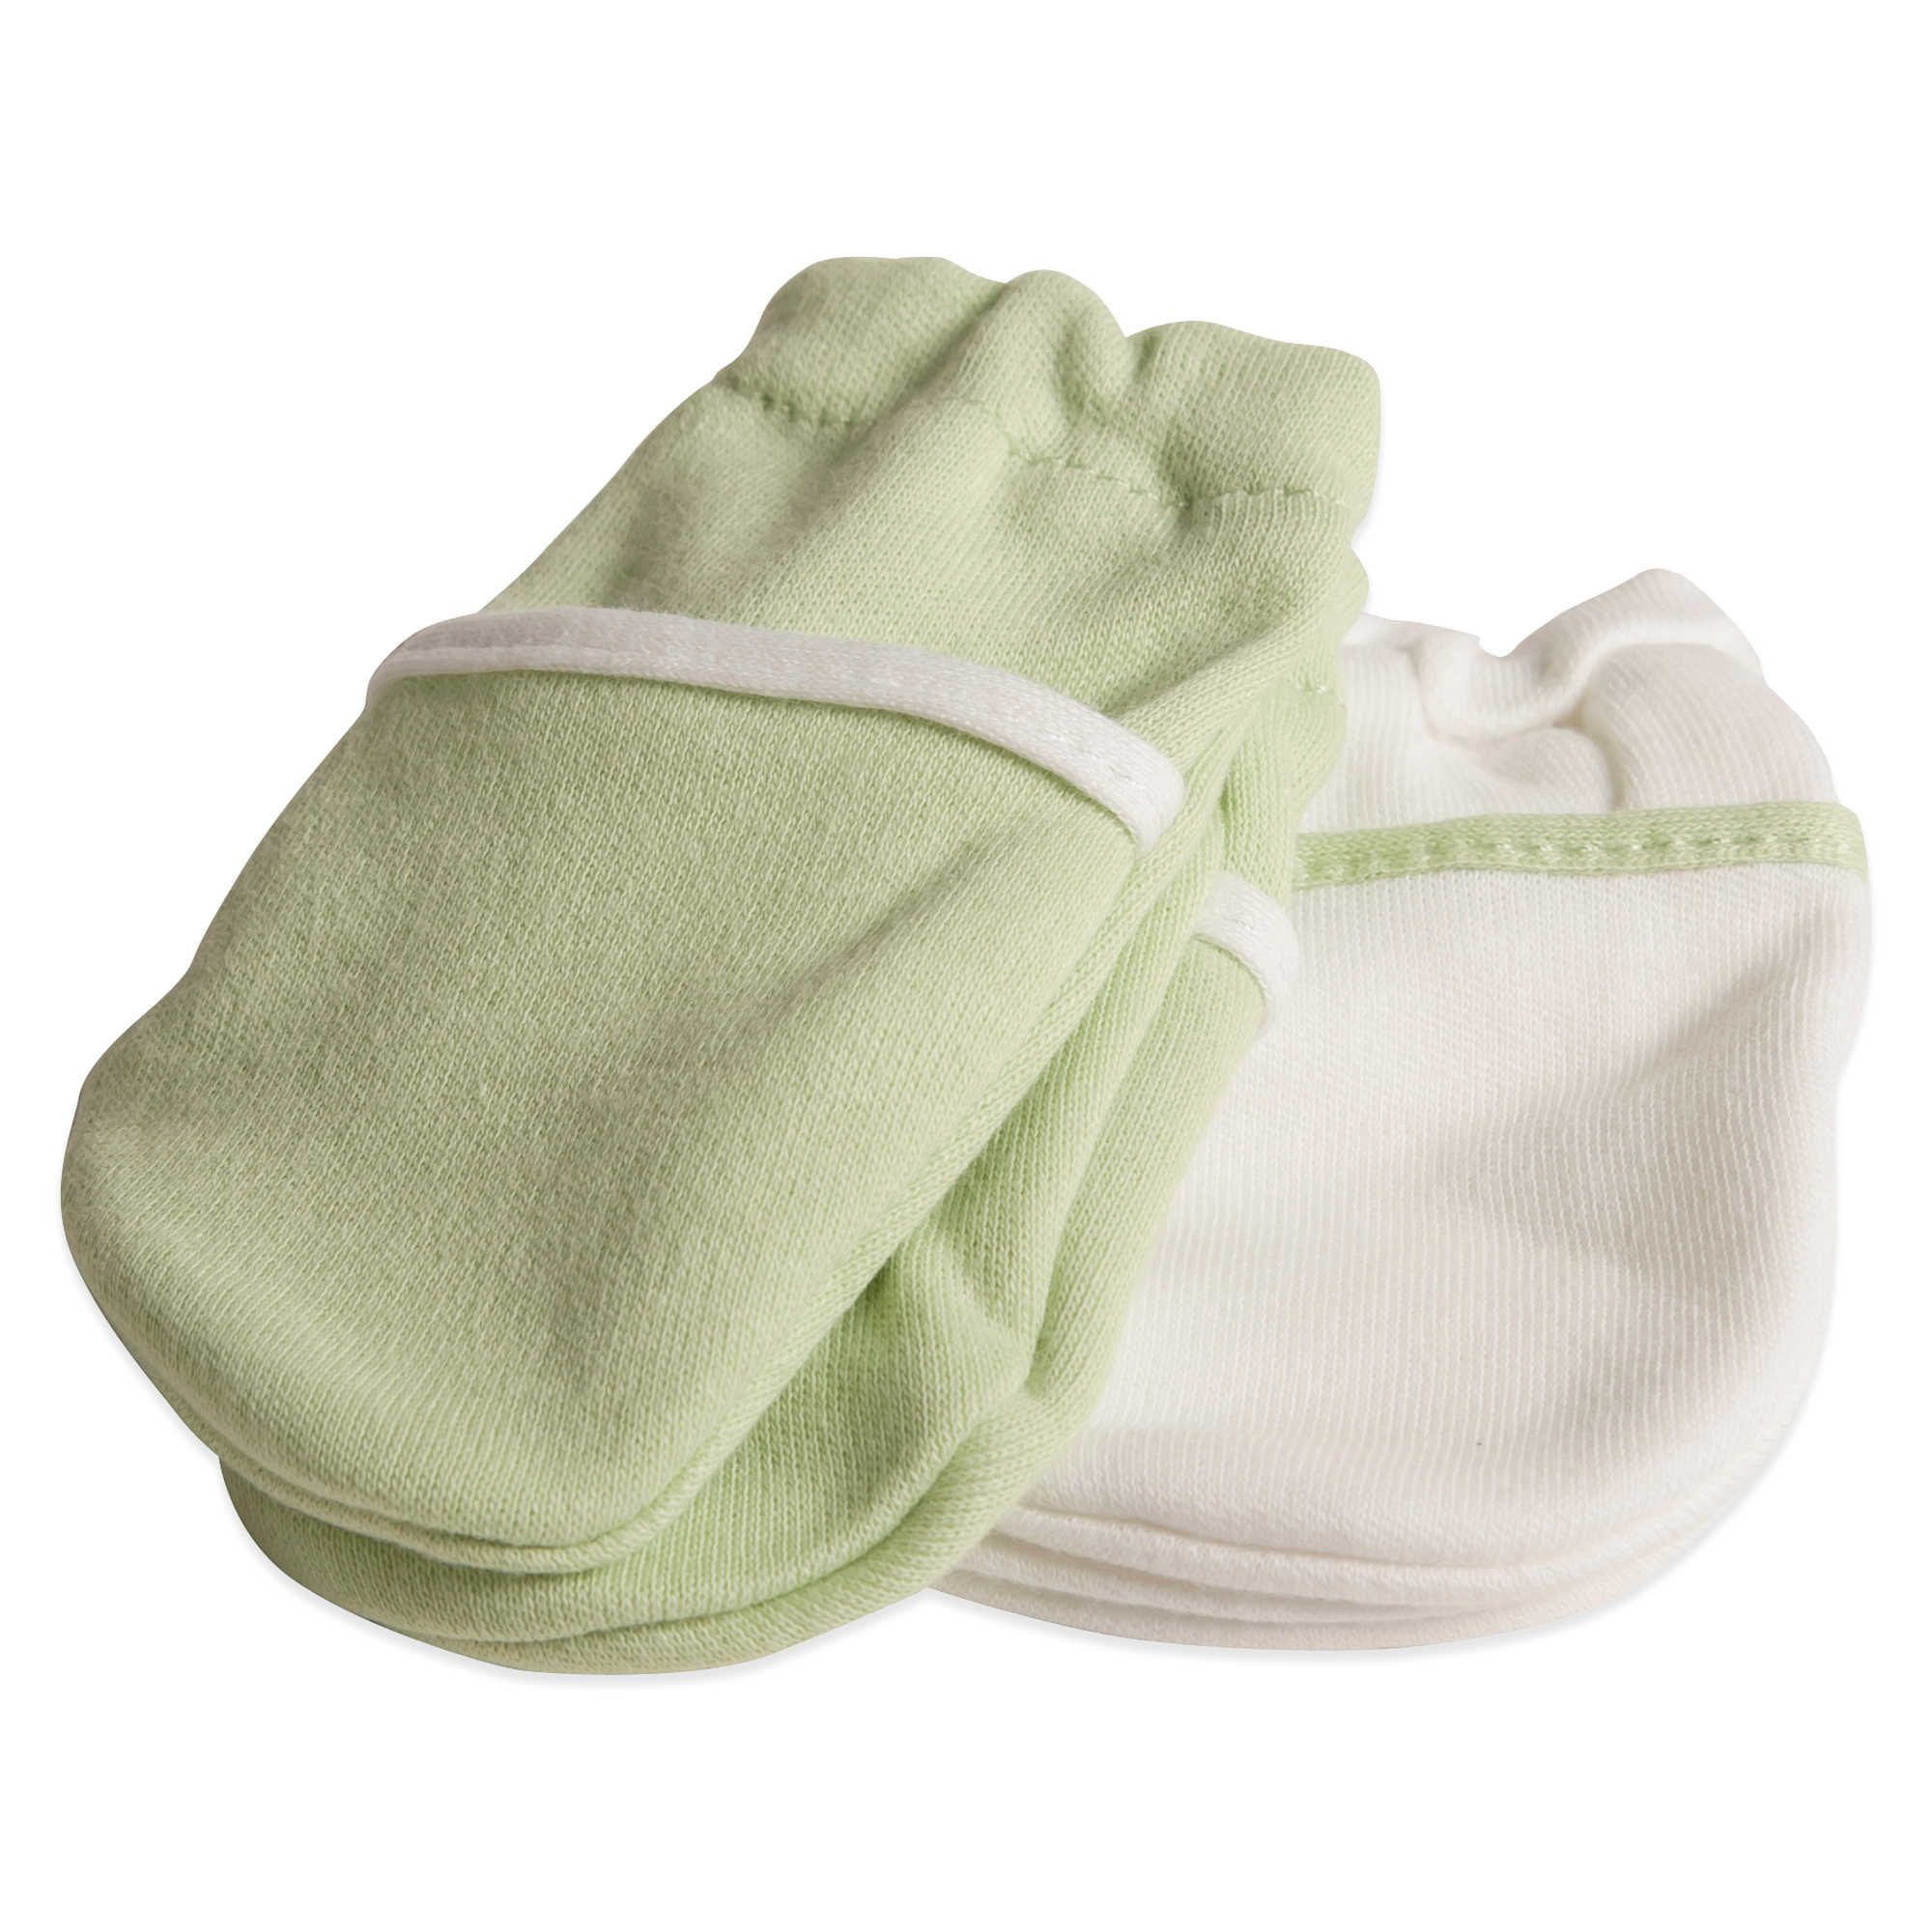 Durio Baby Mittens Newborn No Scratch Baby Mittens 0-6 Months Soft Cotton Newborn Mittens Baby Gloves 